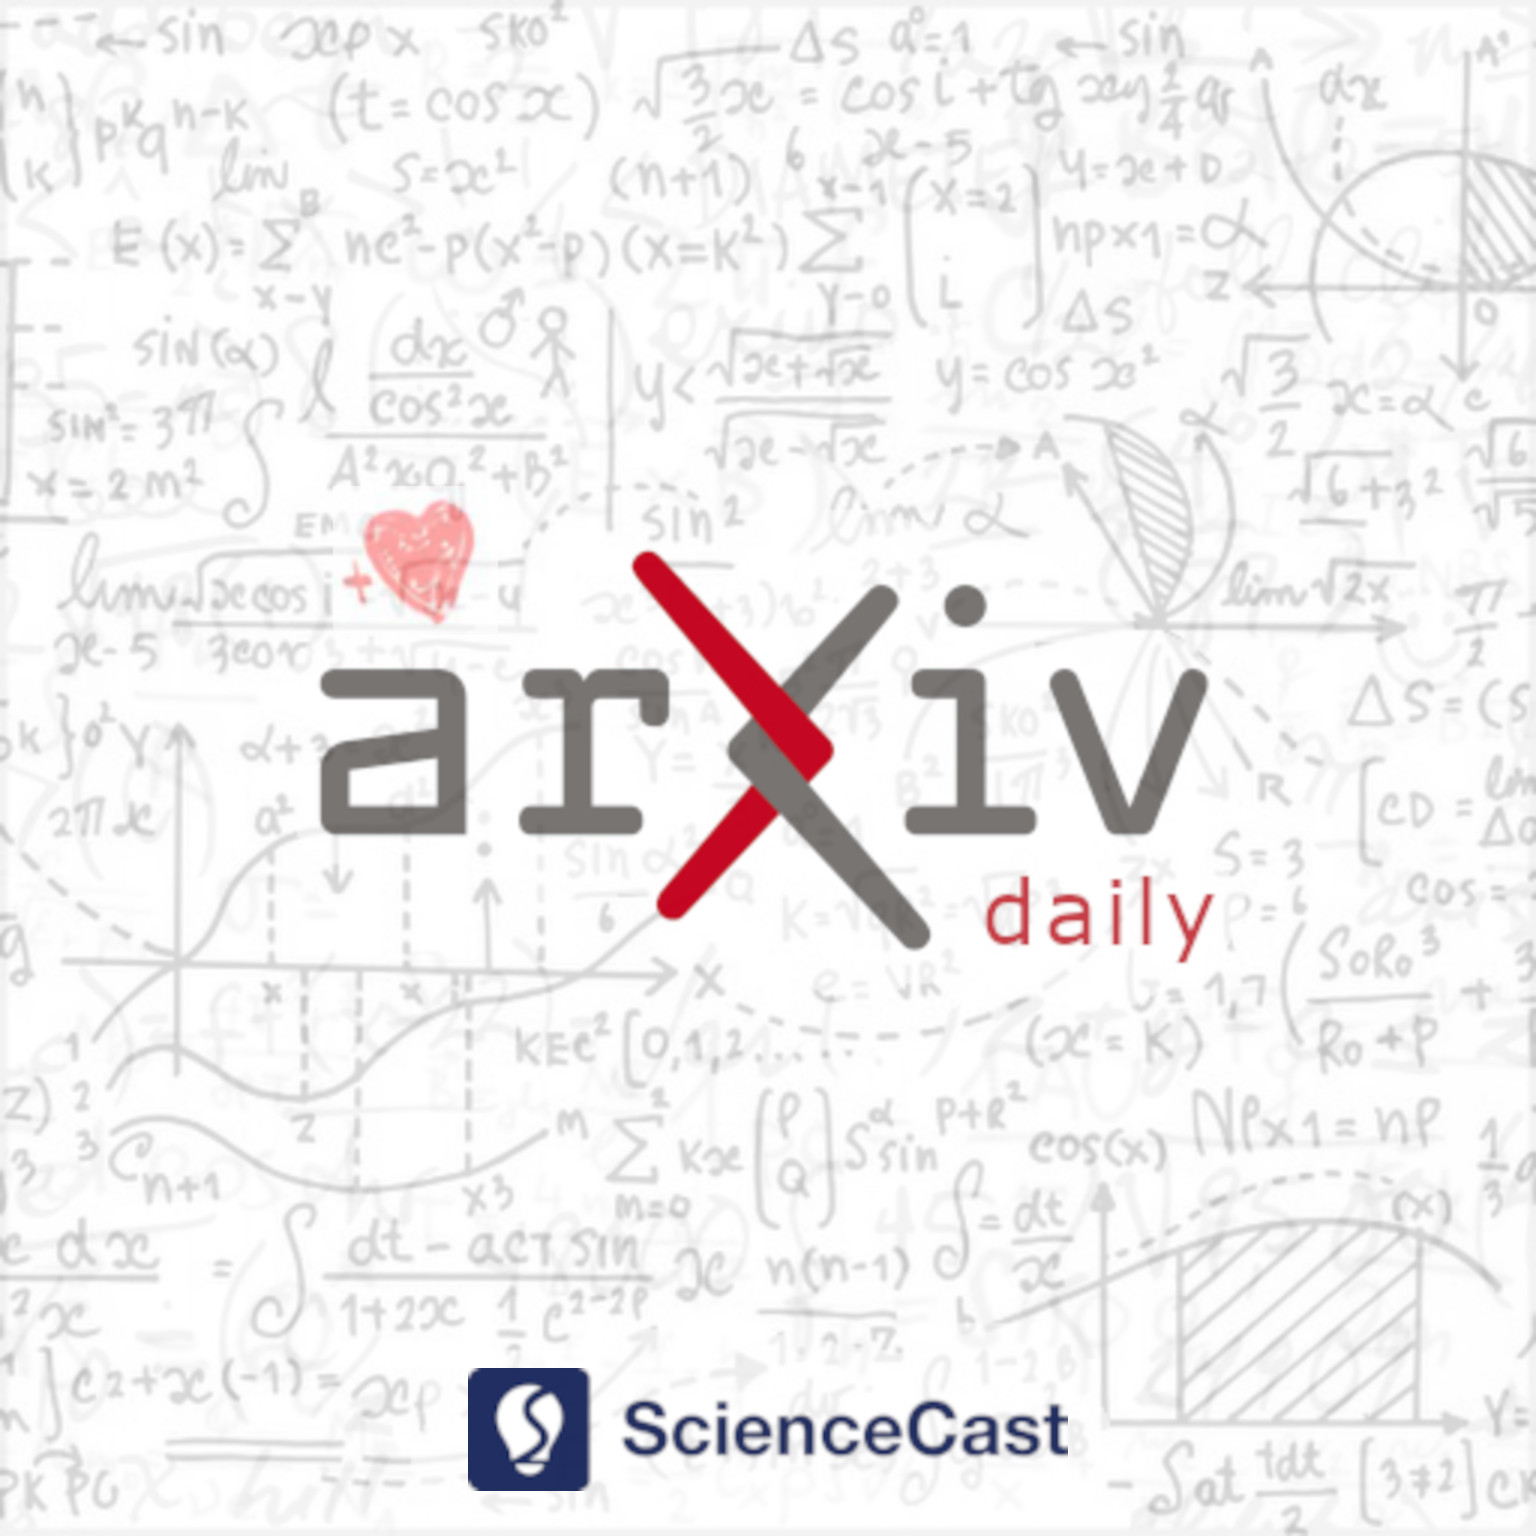 arXiv daily: Optics